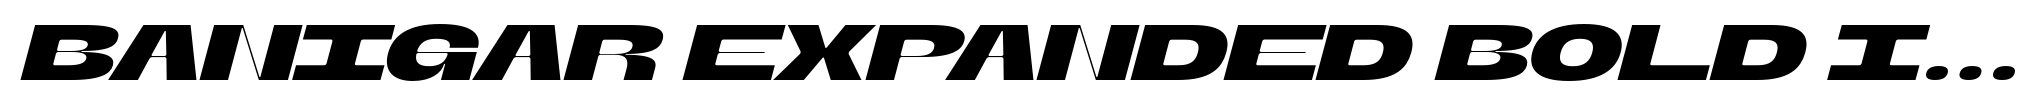 Banigar Expanded Bold Italic image